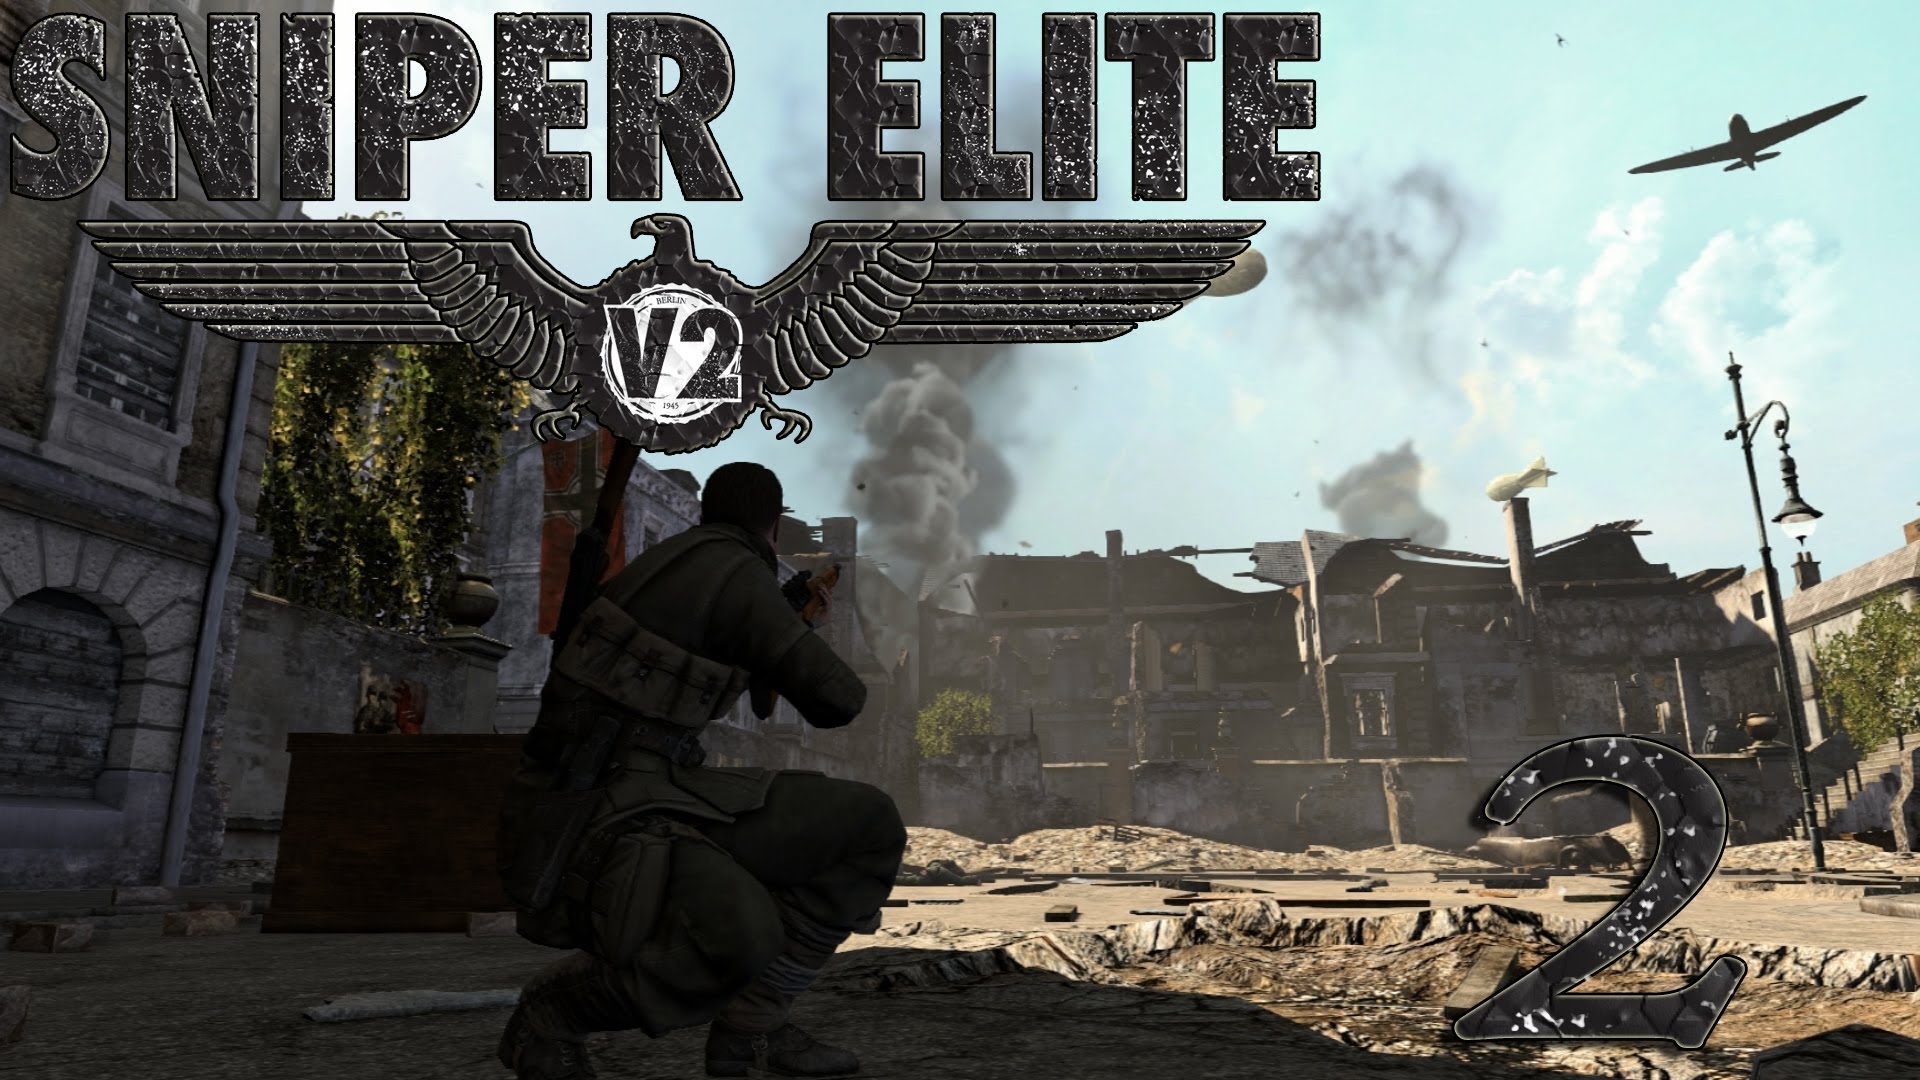 sniper elite 5 download